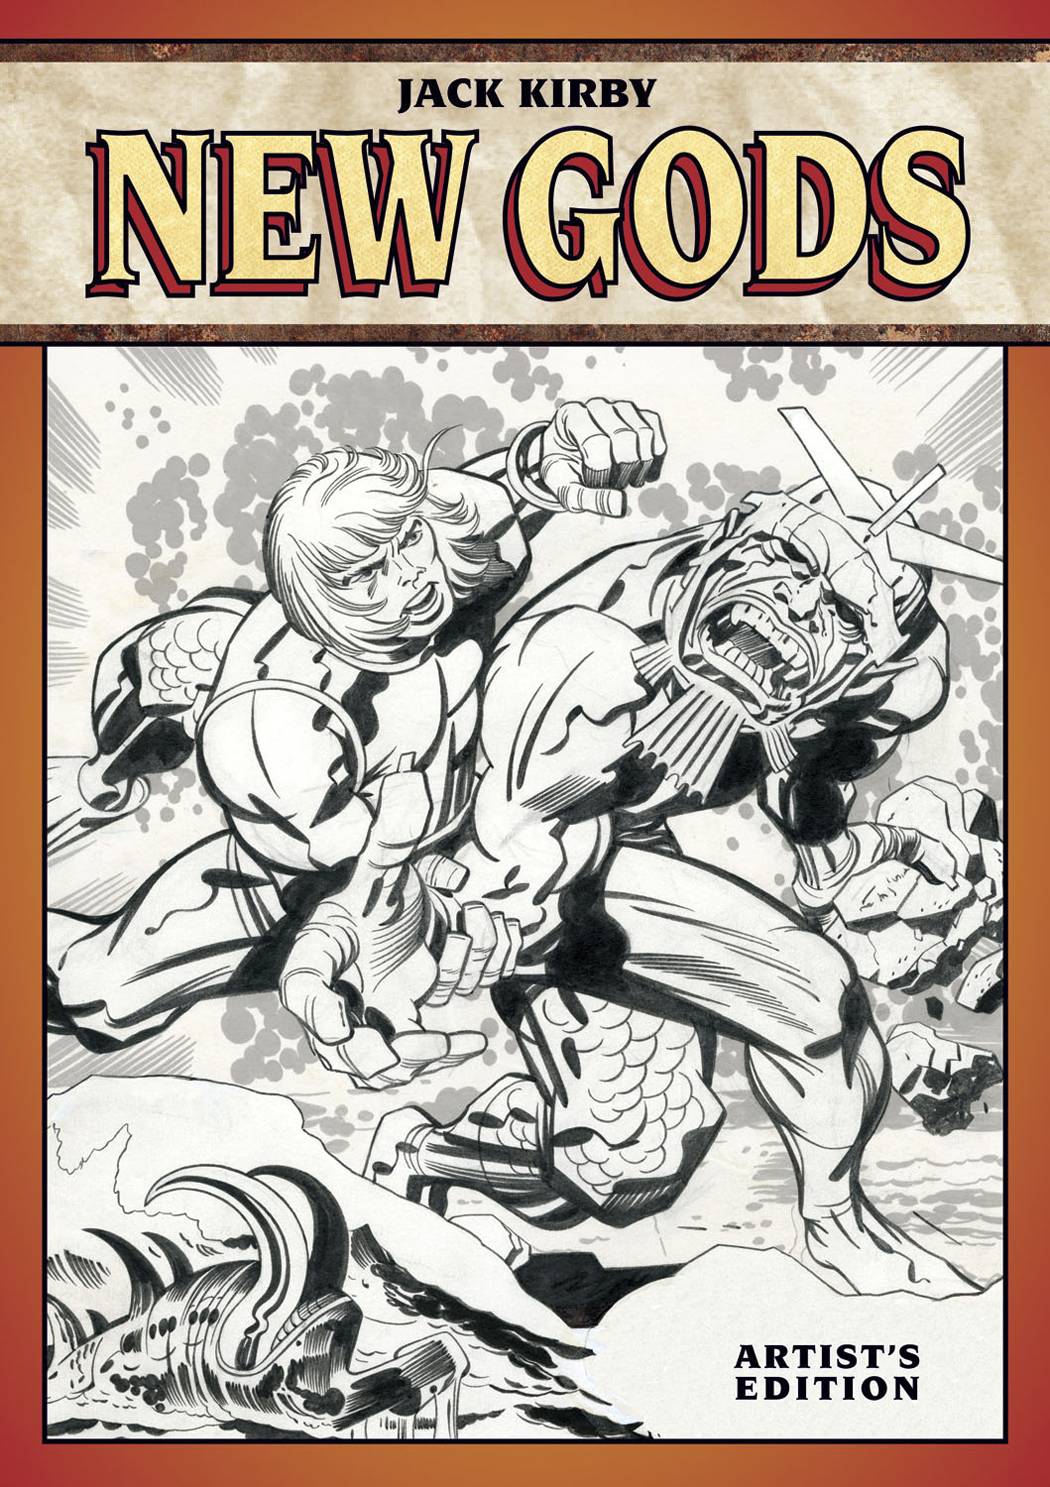 New Gods by Jack Kirby